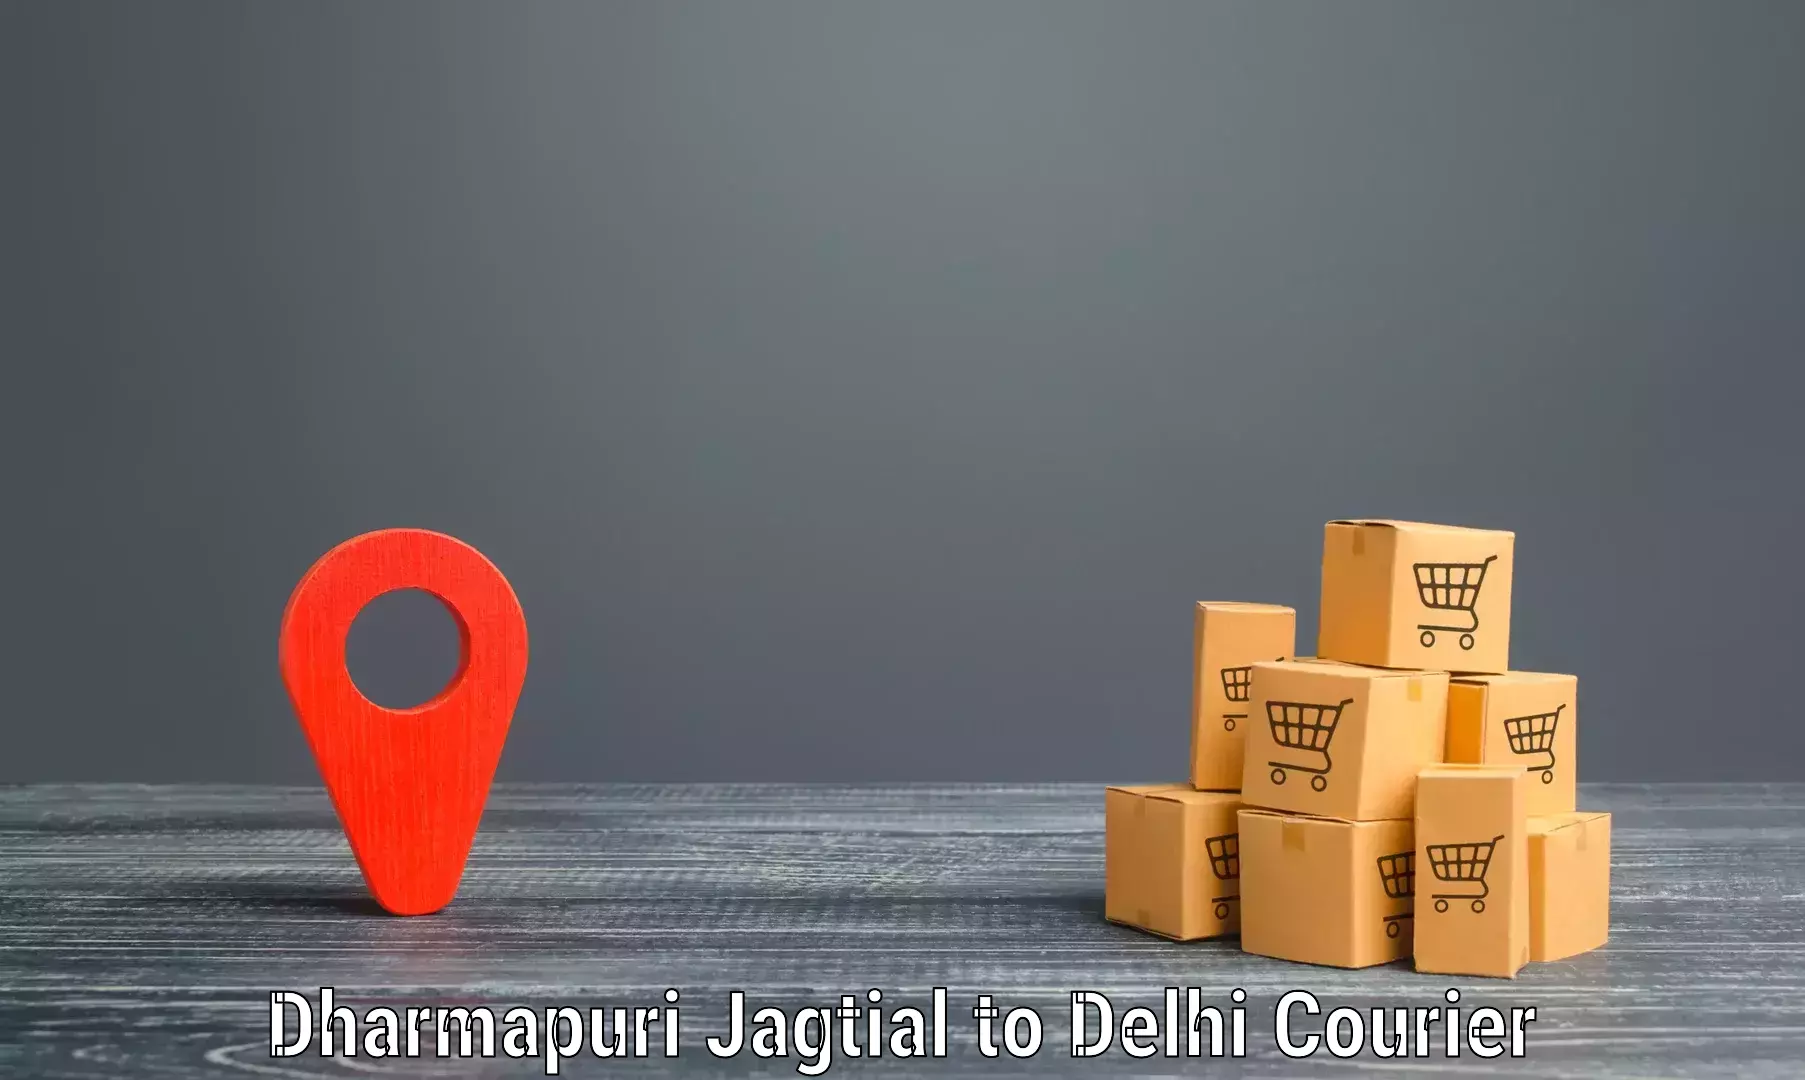 Express delivery capabilities in Dharmapuri Jagtial to Guru Gobind Singh Indraprastha University New Delhi